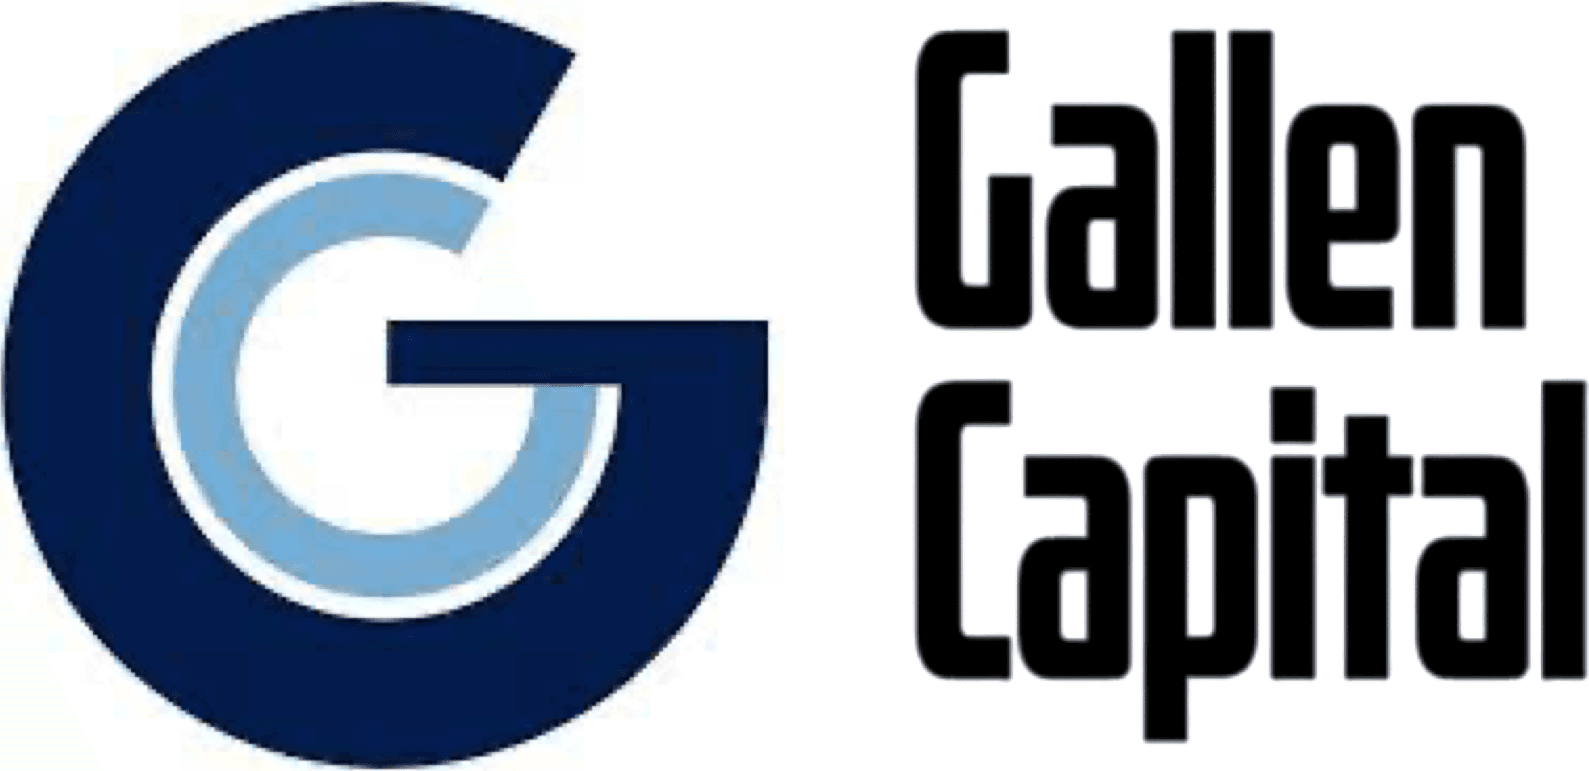 Gallen Capital